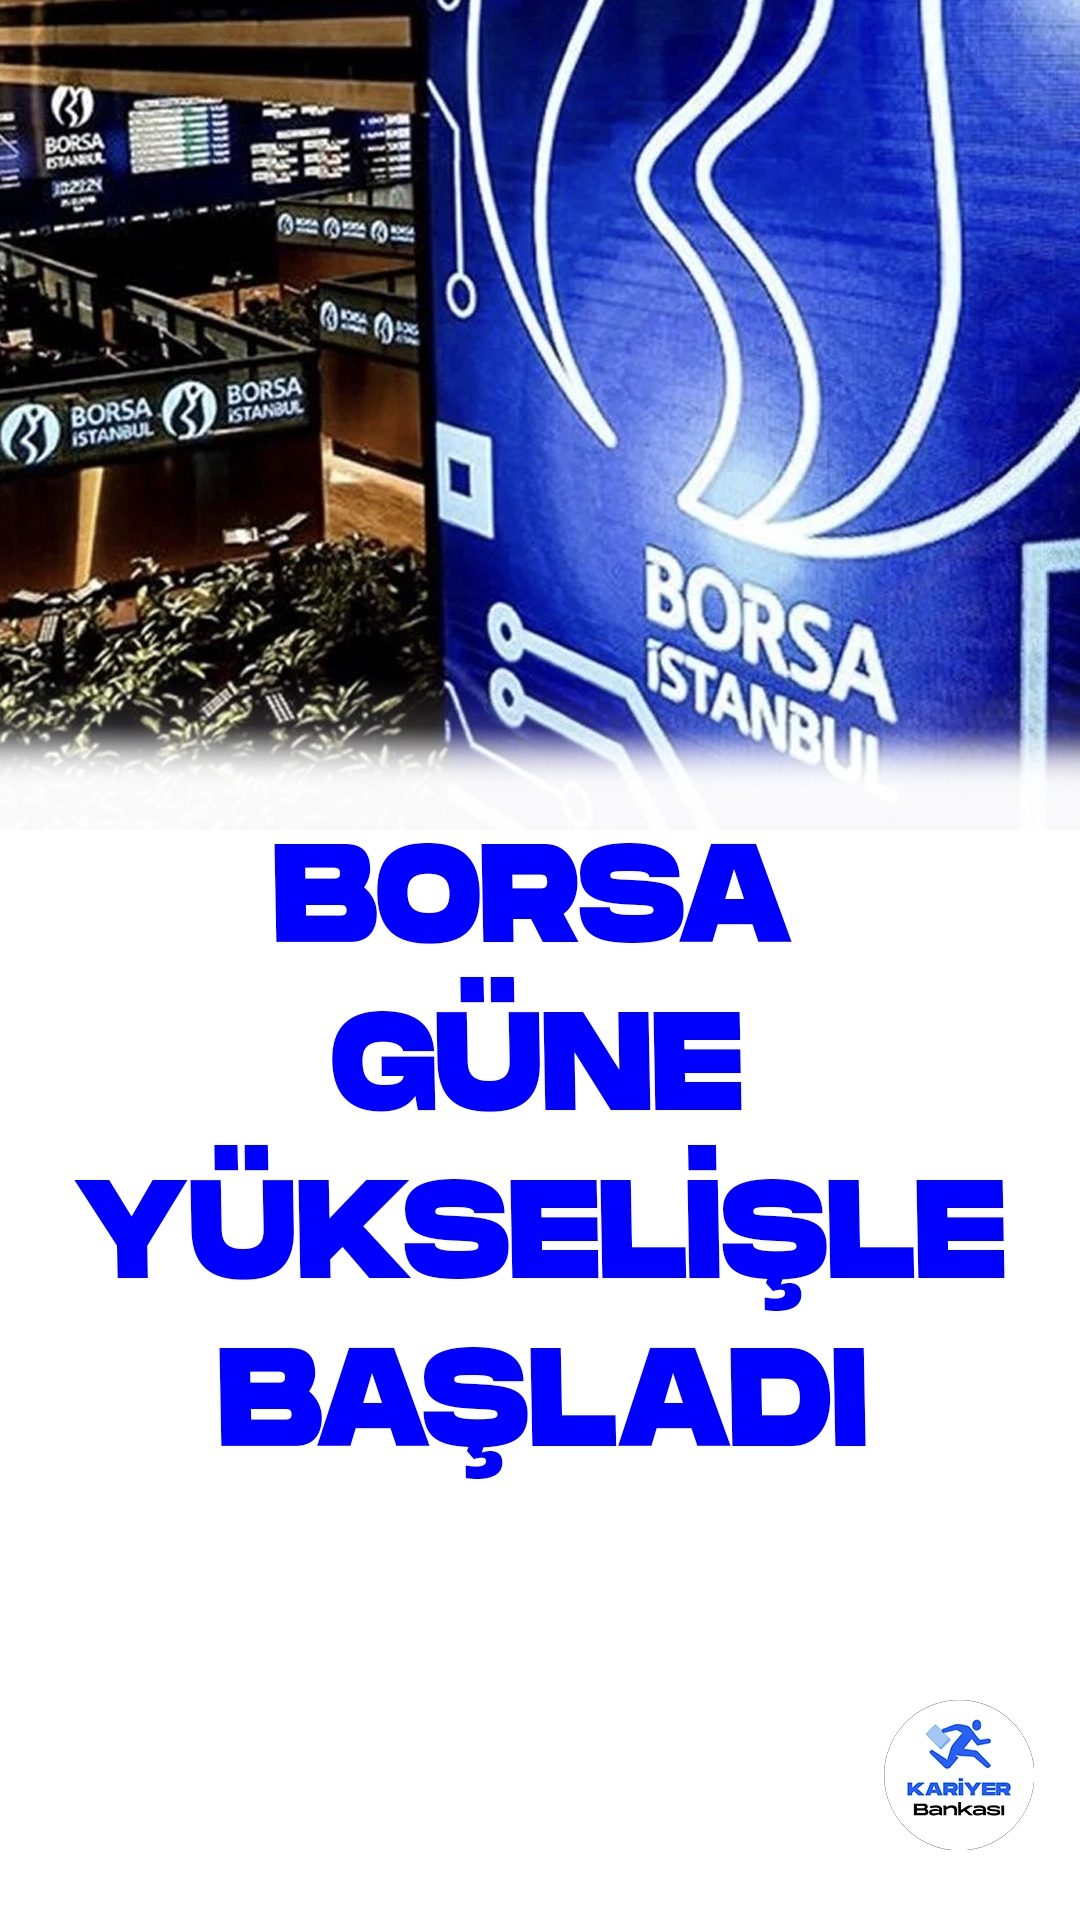 Borsa İstanbul'da BIST 100 Endeksi Güne İyi Bir Başlangıç Yaptı.Borsa İstanbul'da BIST 100 endeksi, güne yüzde 0,47'lik sağlam bir yükselişle 8.482,37 puandan başladı.